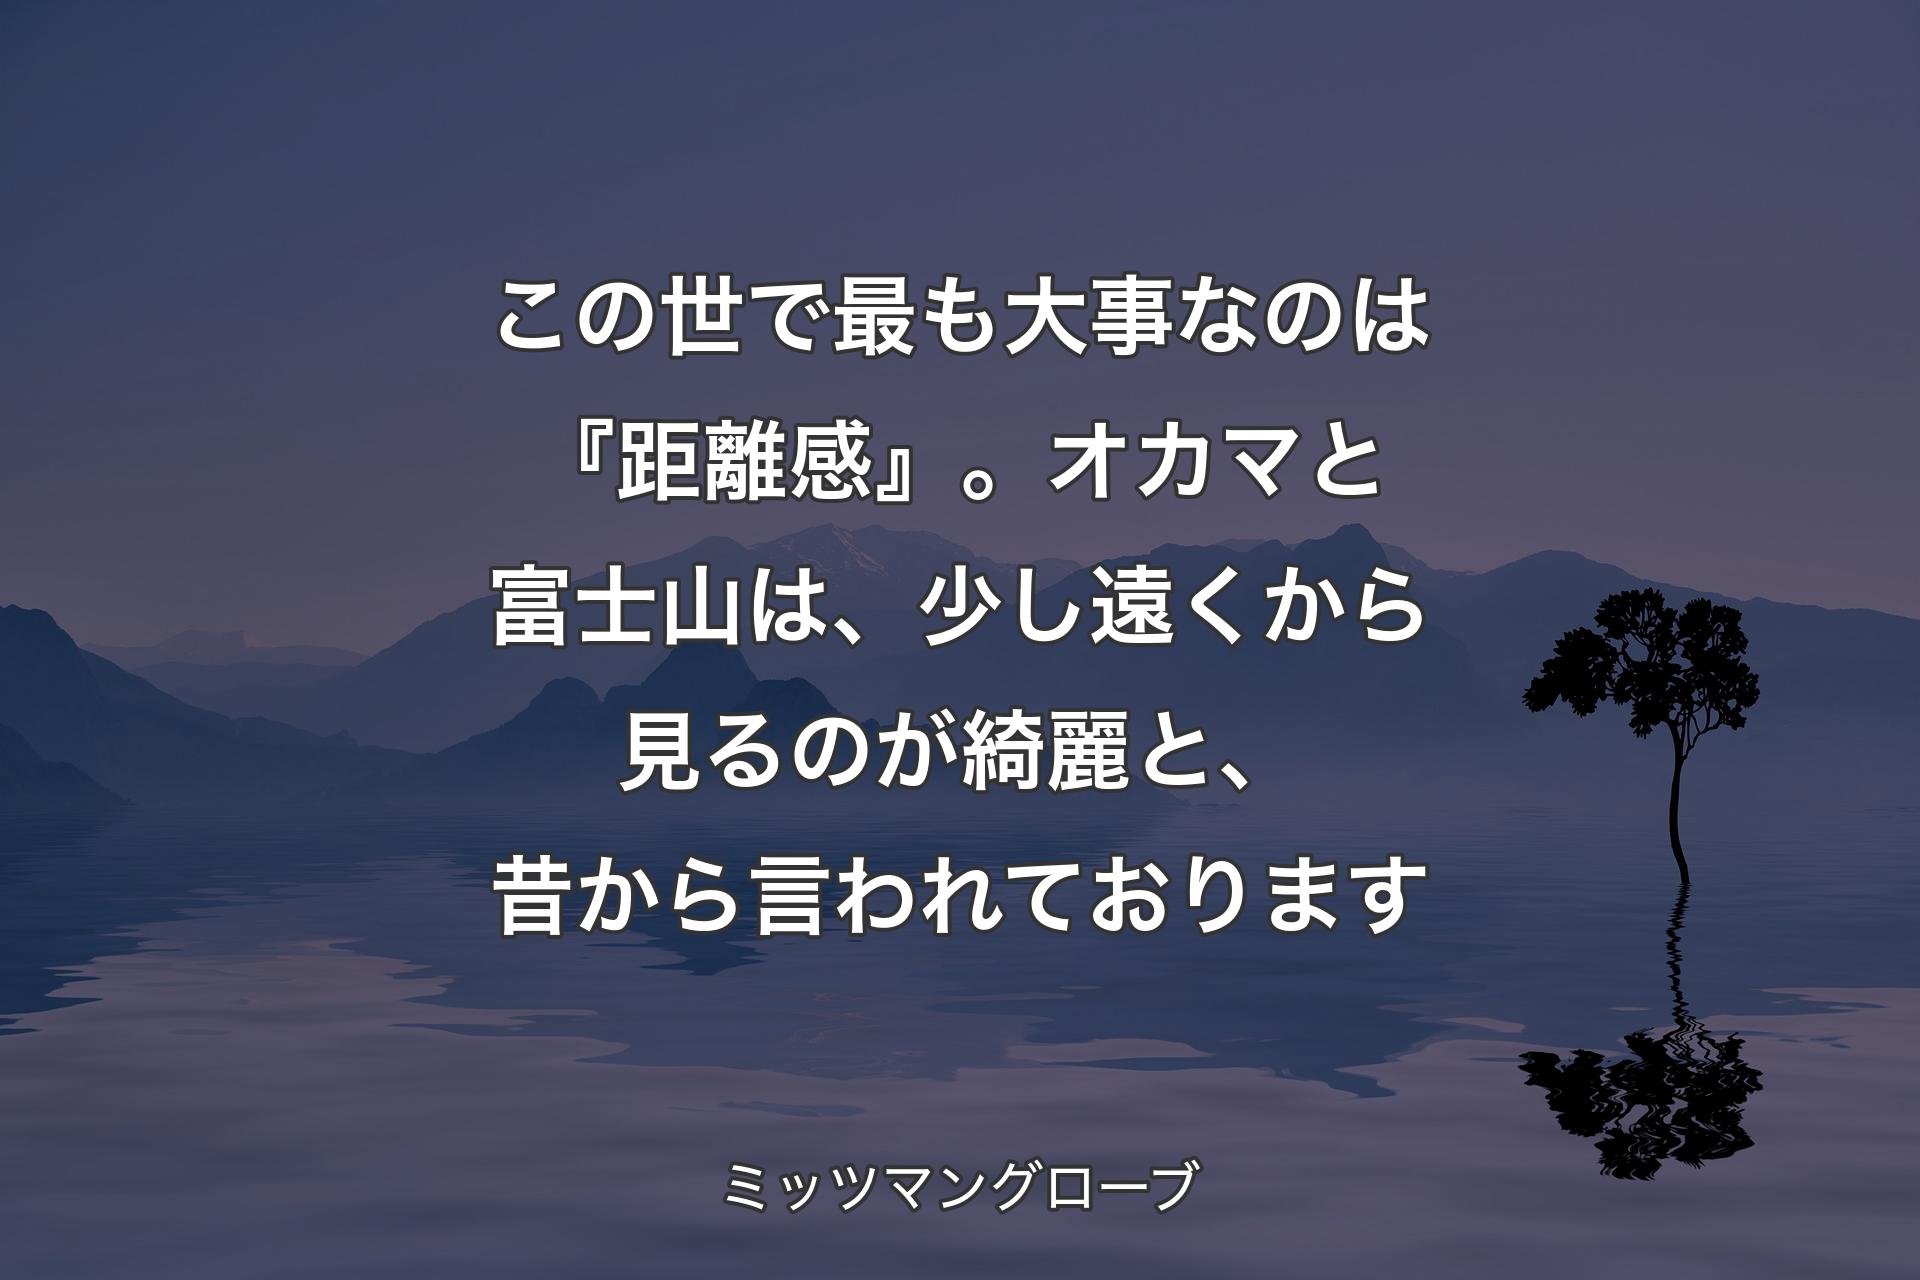 【背景4】この世で最も大事なのは『距離感』。オカマと富士山は、少し遠くから見るのが綺麗と、昔から言われております - ミッツマングローブ